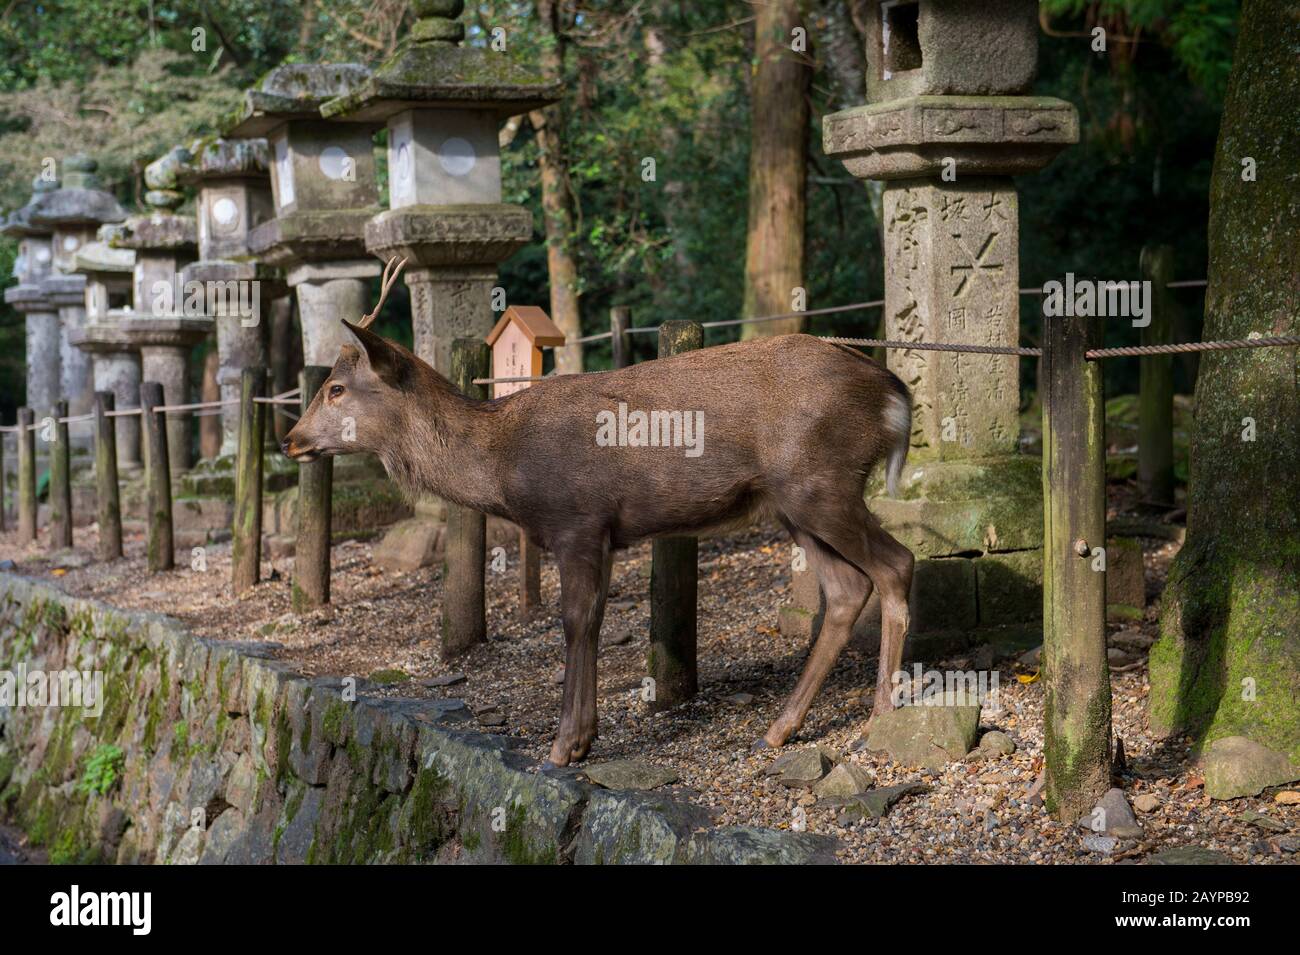 A Sika deer walking through a row of stone lanterns at the Kasuga Taisha Shinen Manyo Botanical Garden near the Kasuga Shrine (Kasuga-taisha) in the c Stock Photo